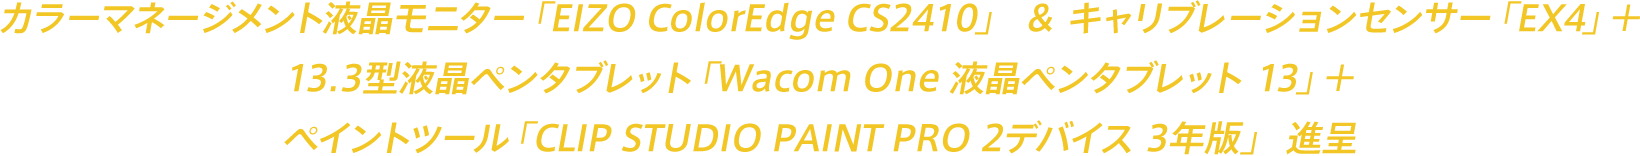 カラーマネージメント液晶モニター「EIZO ColorEdge CS2410」 ＆ キャリブレーションセンサー「EX4」＋13.3型液晶ペンタブレット「Wacom One 液晶ペンタブレット 13」＋ペイントツール「CLIP STUDIO PAINT PRO 2デバイス 3年版」進呈